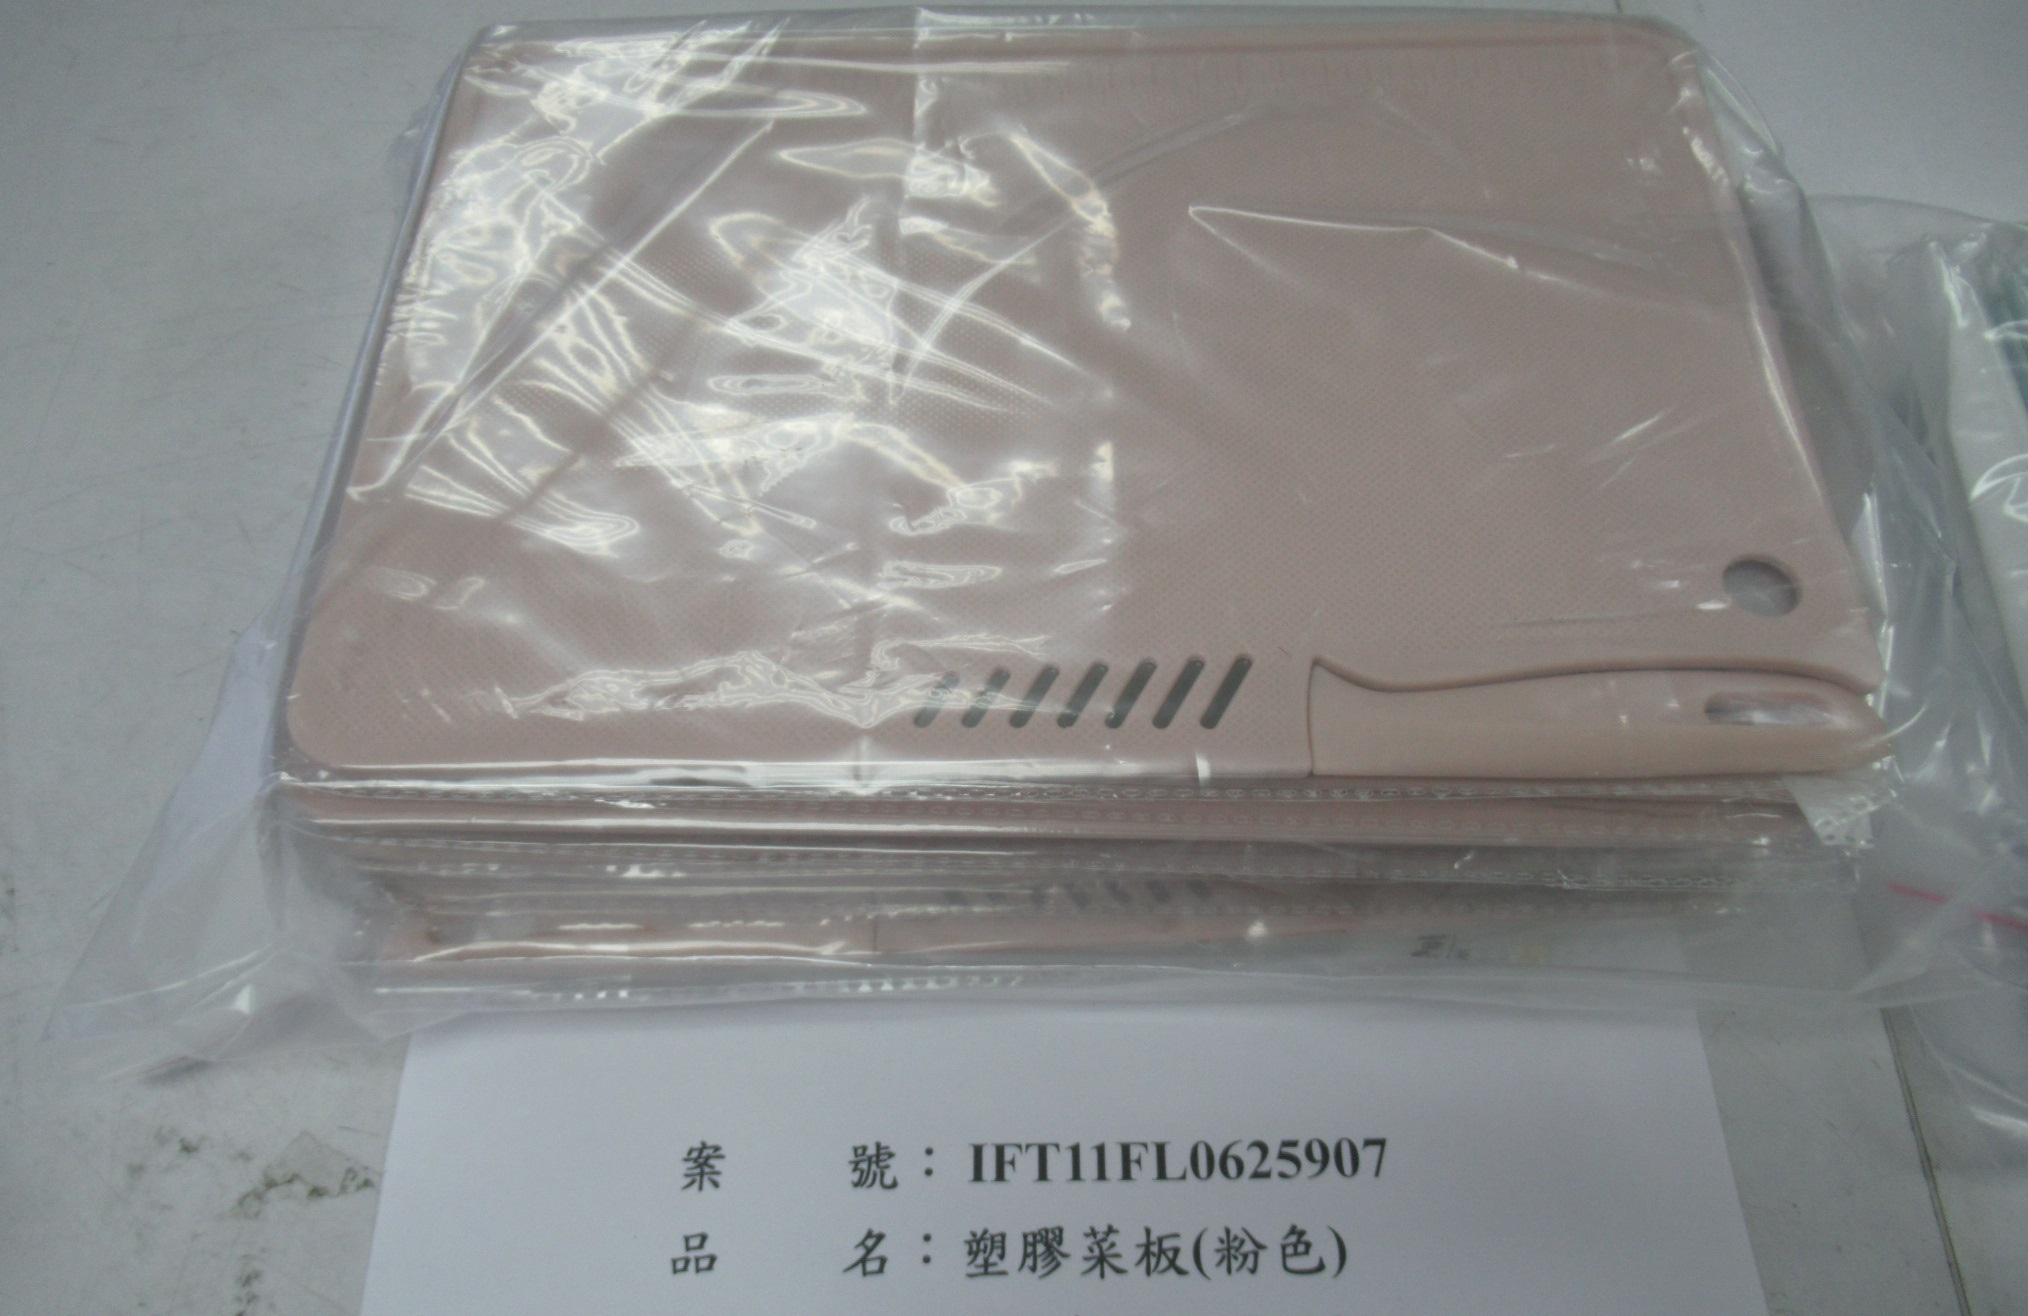 中國大陸出口「塑膠菜板(粉色)」容器具-溶出試驗不符規定